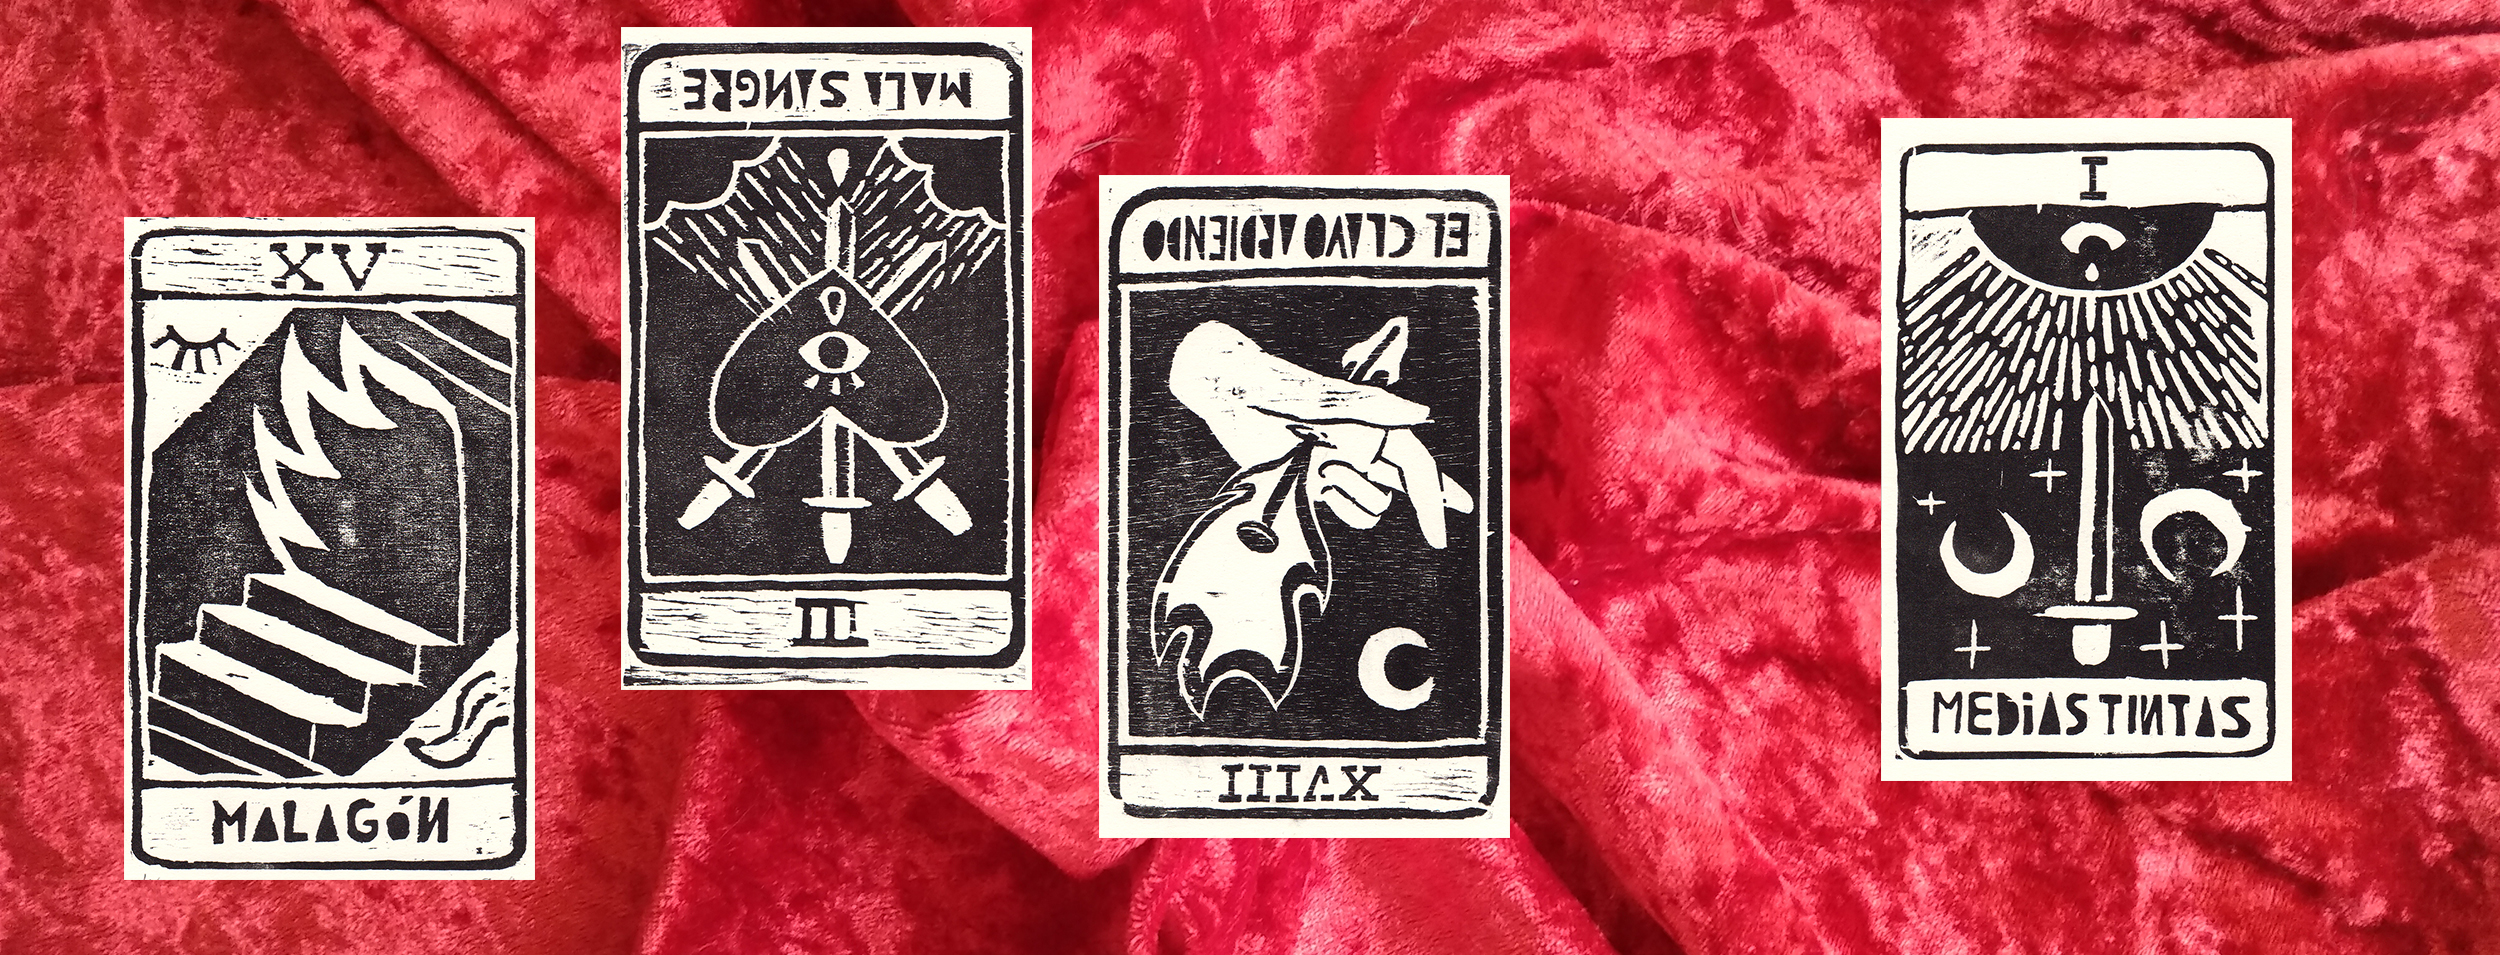 La imagen muestra cuatro cartas del tarot sobre un fondo de terciopelo rojo.